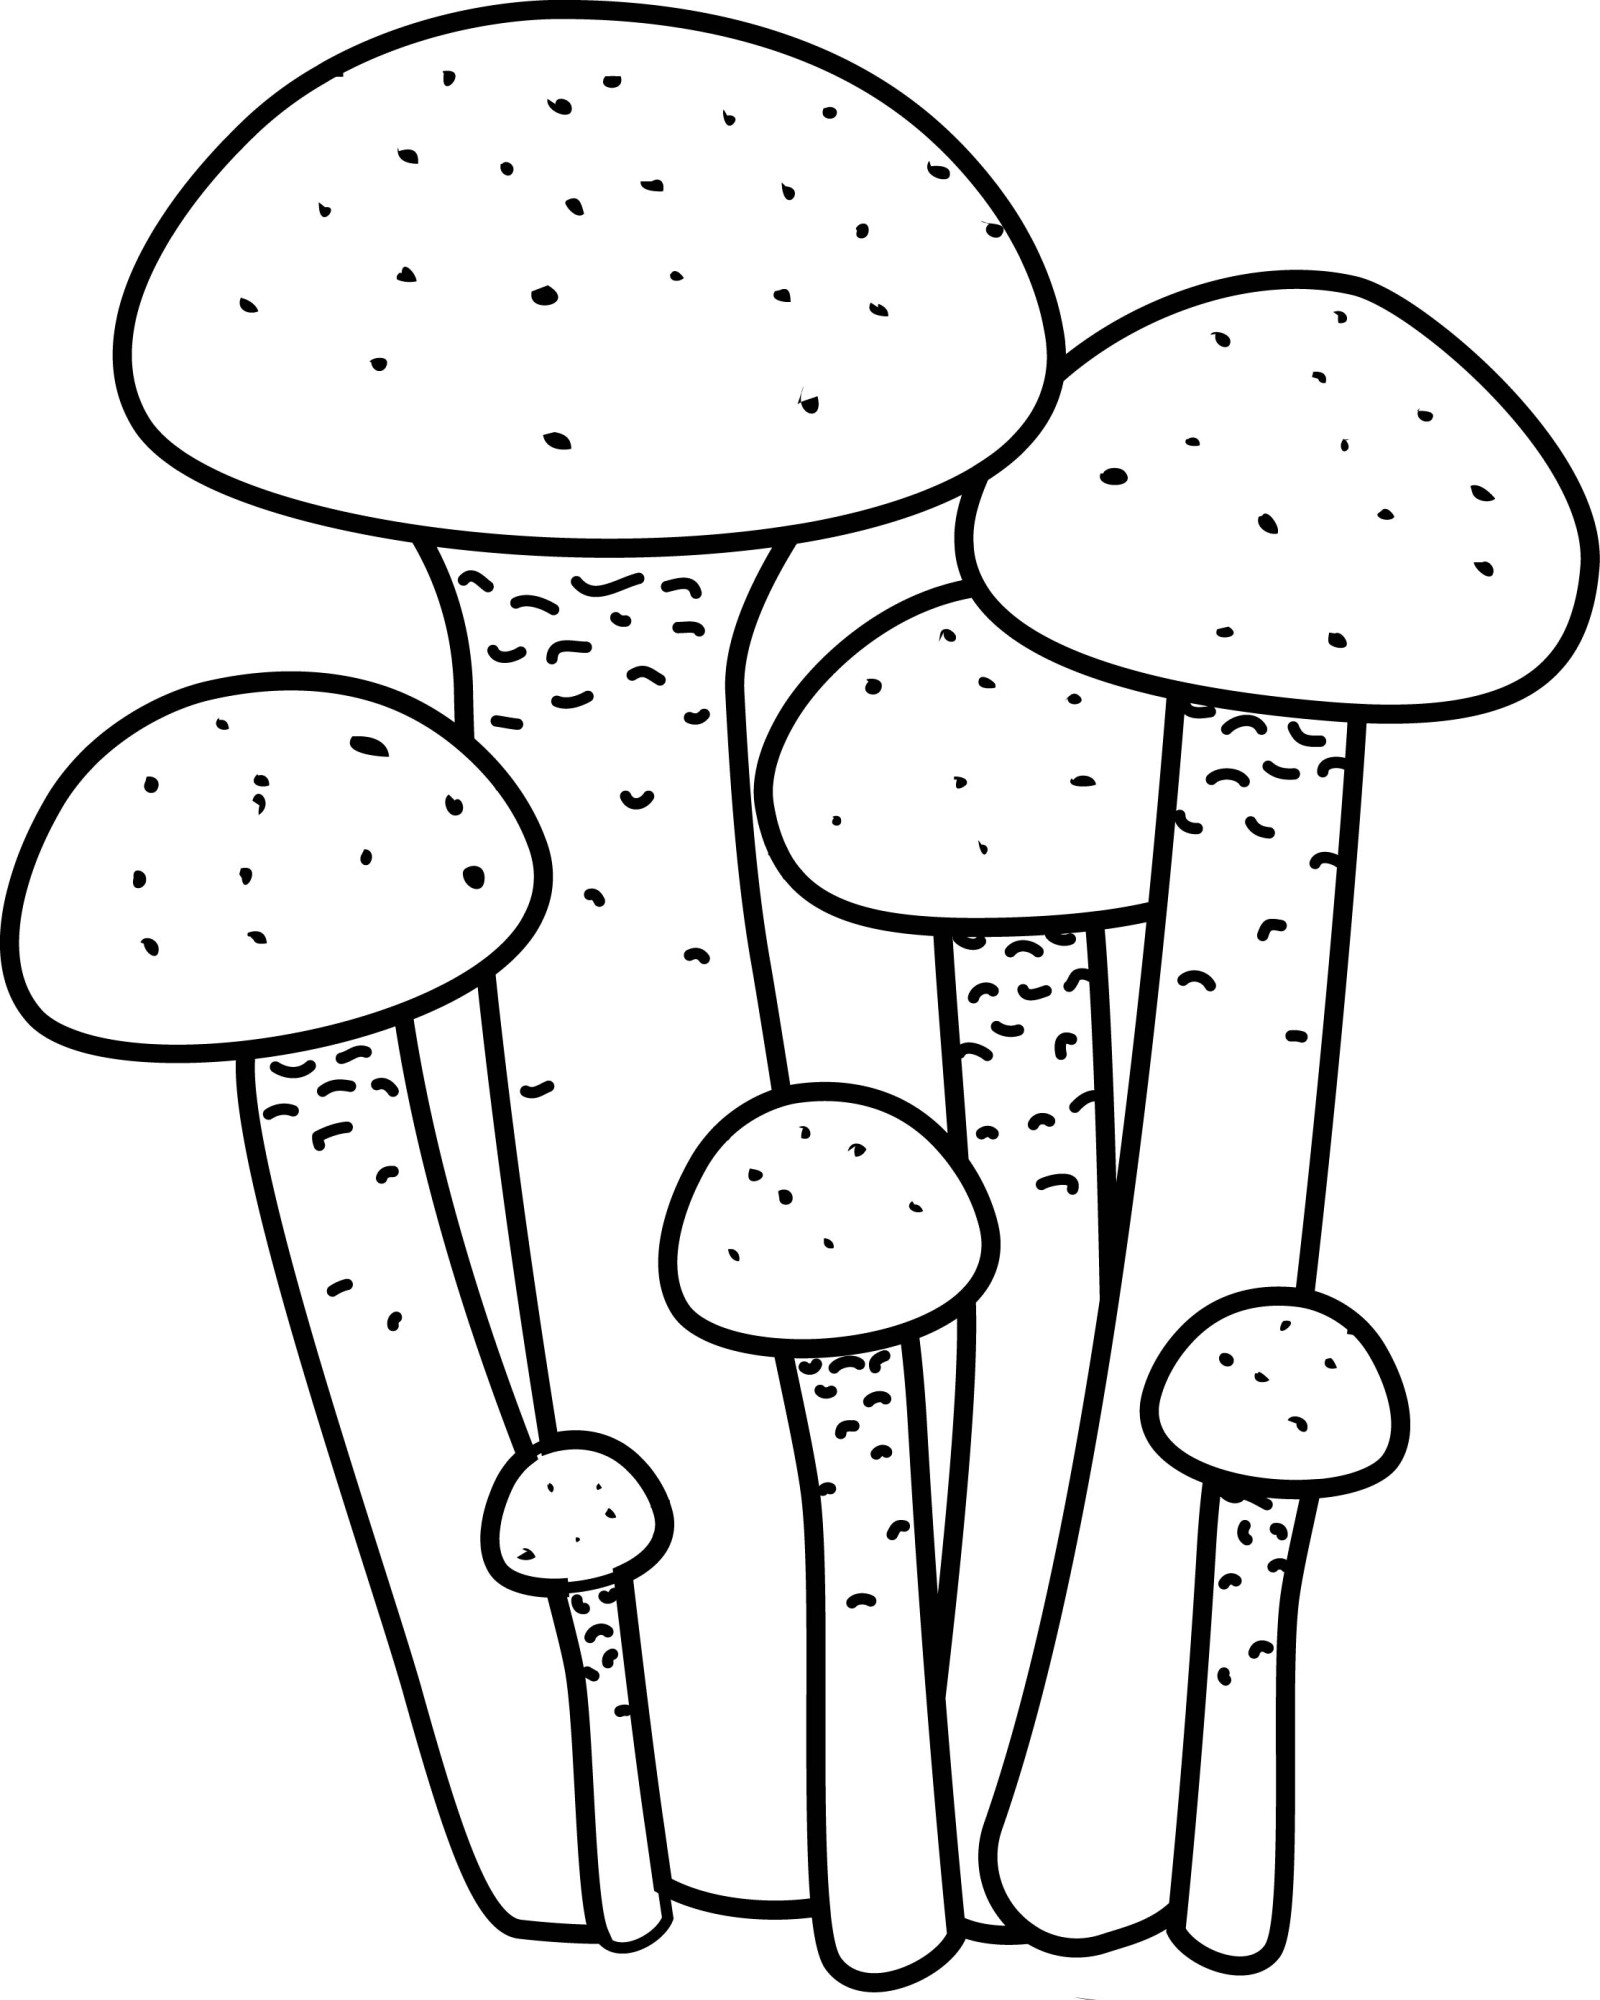 Раскраска для детей: грибы опята